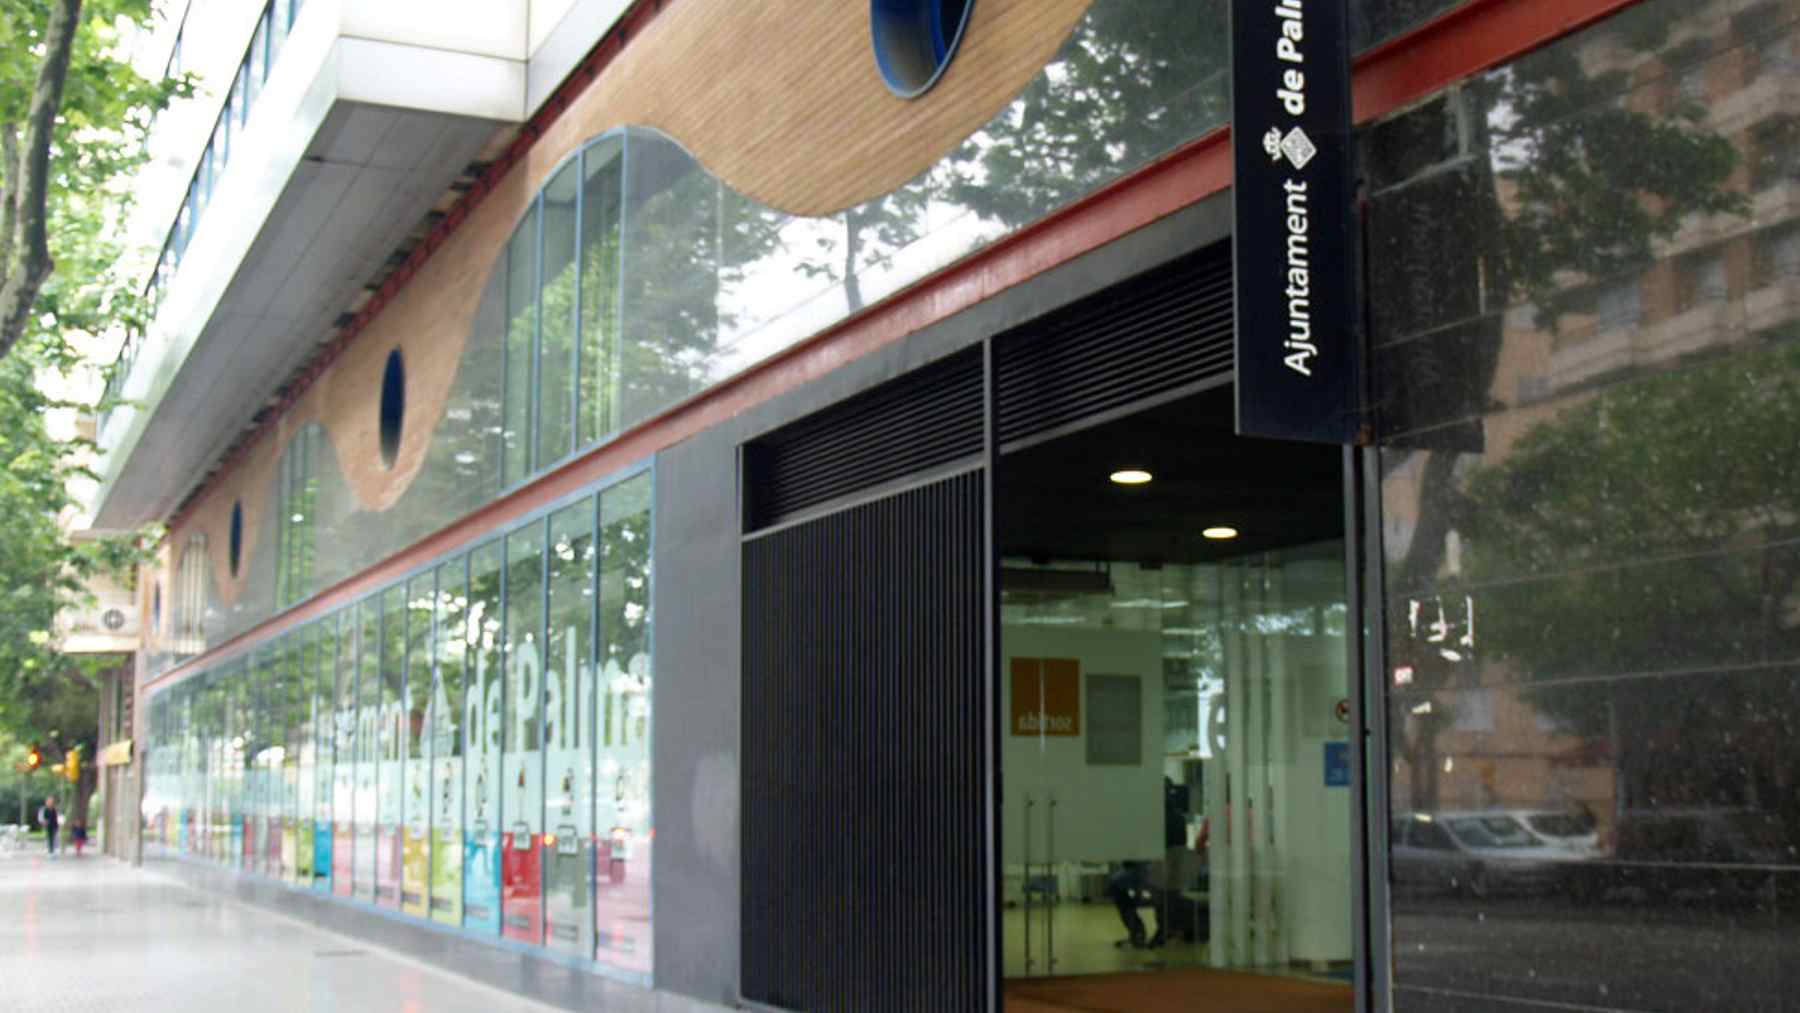 Oficina de atención al ciudadano del Ayuntamiento de Palma en Avenidas.